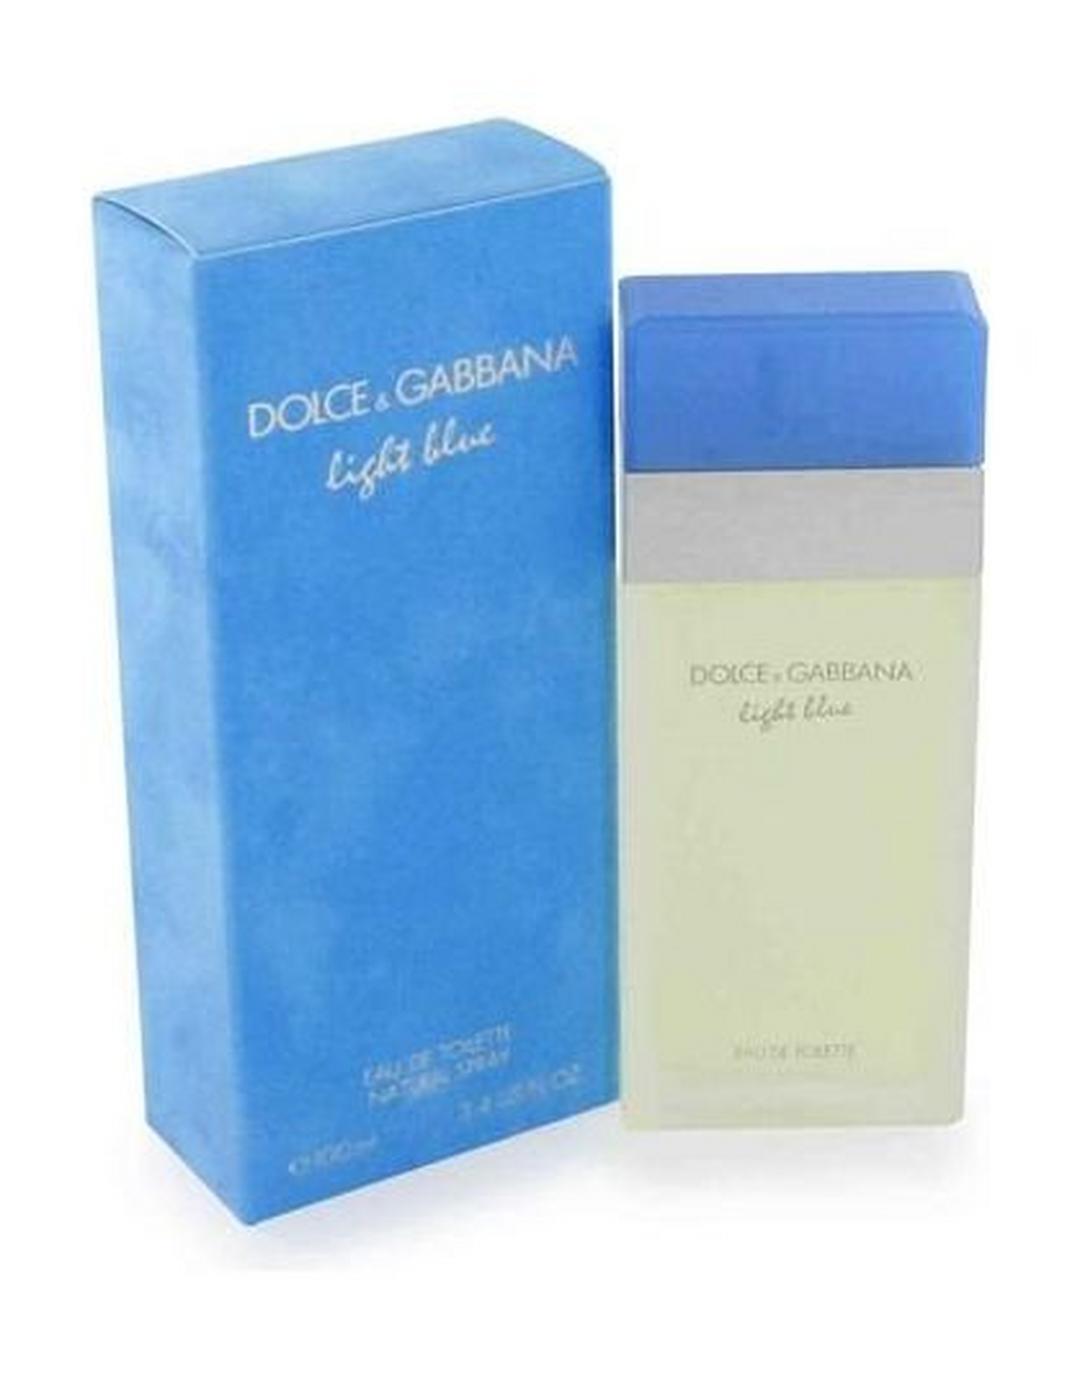 DOLCE & GABBANA Light Blue - Eau de Toilette 100 ml